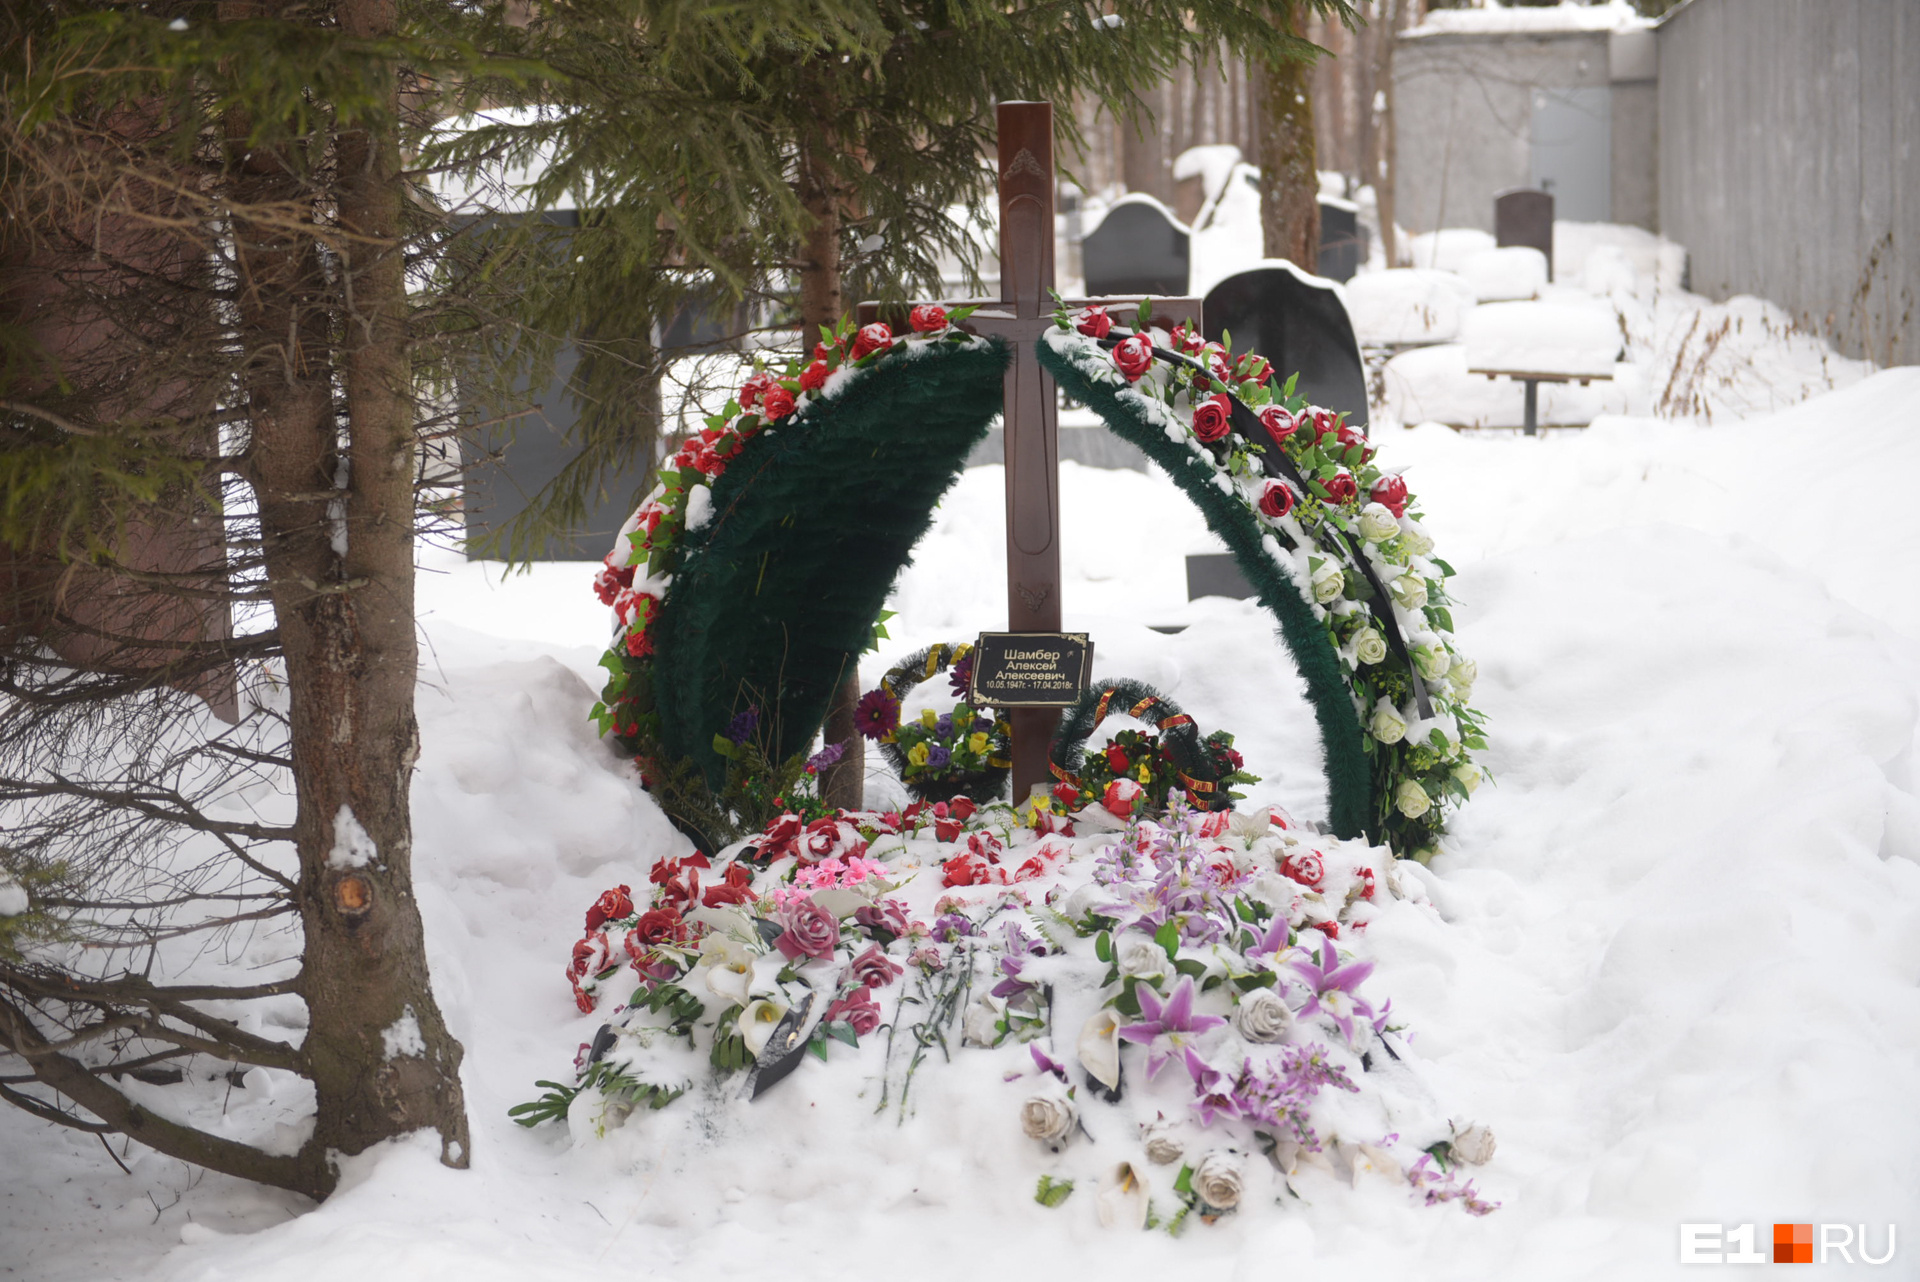 Алексей Шамбер — один из солистов Музкомедии, с его могилы начинается аллея артистов на Широкореченском кладбище